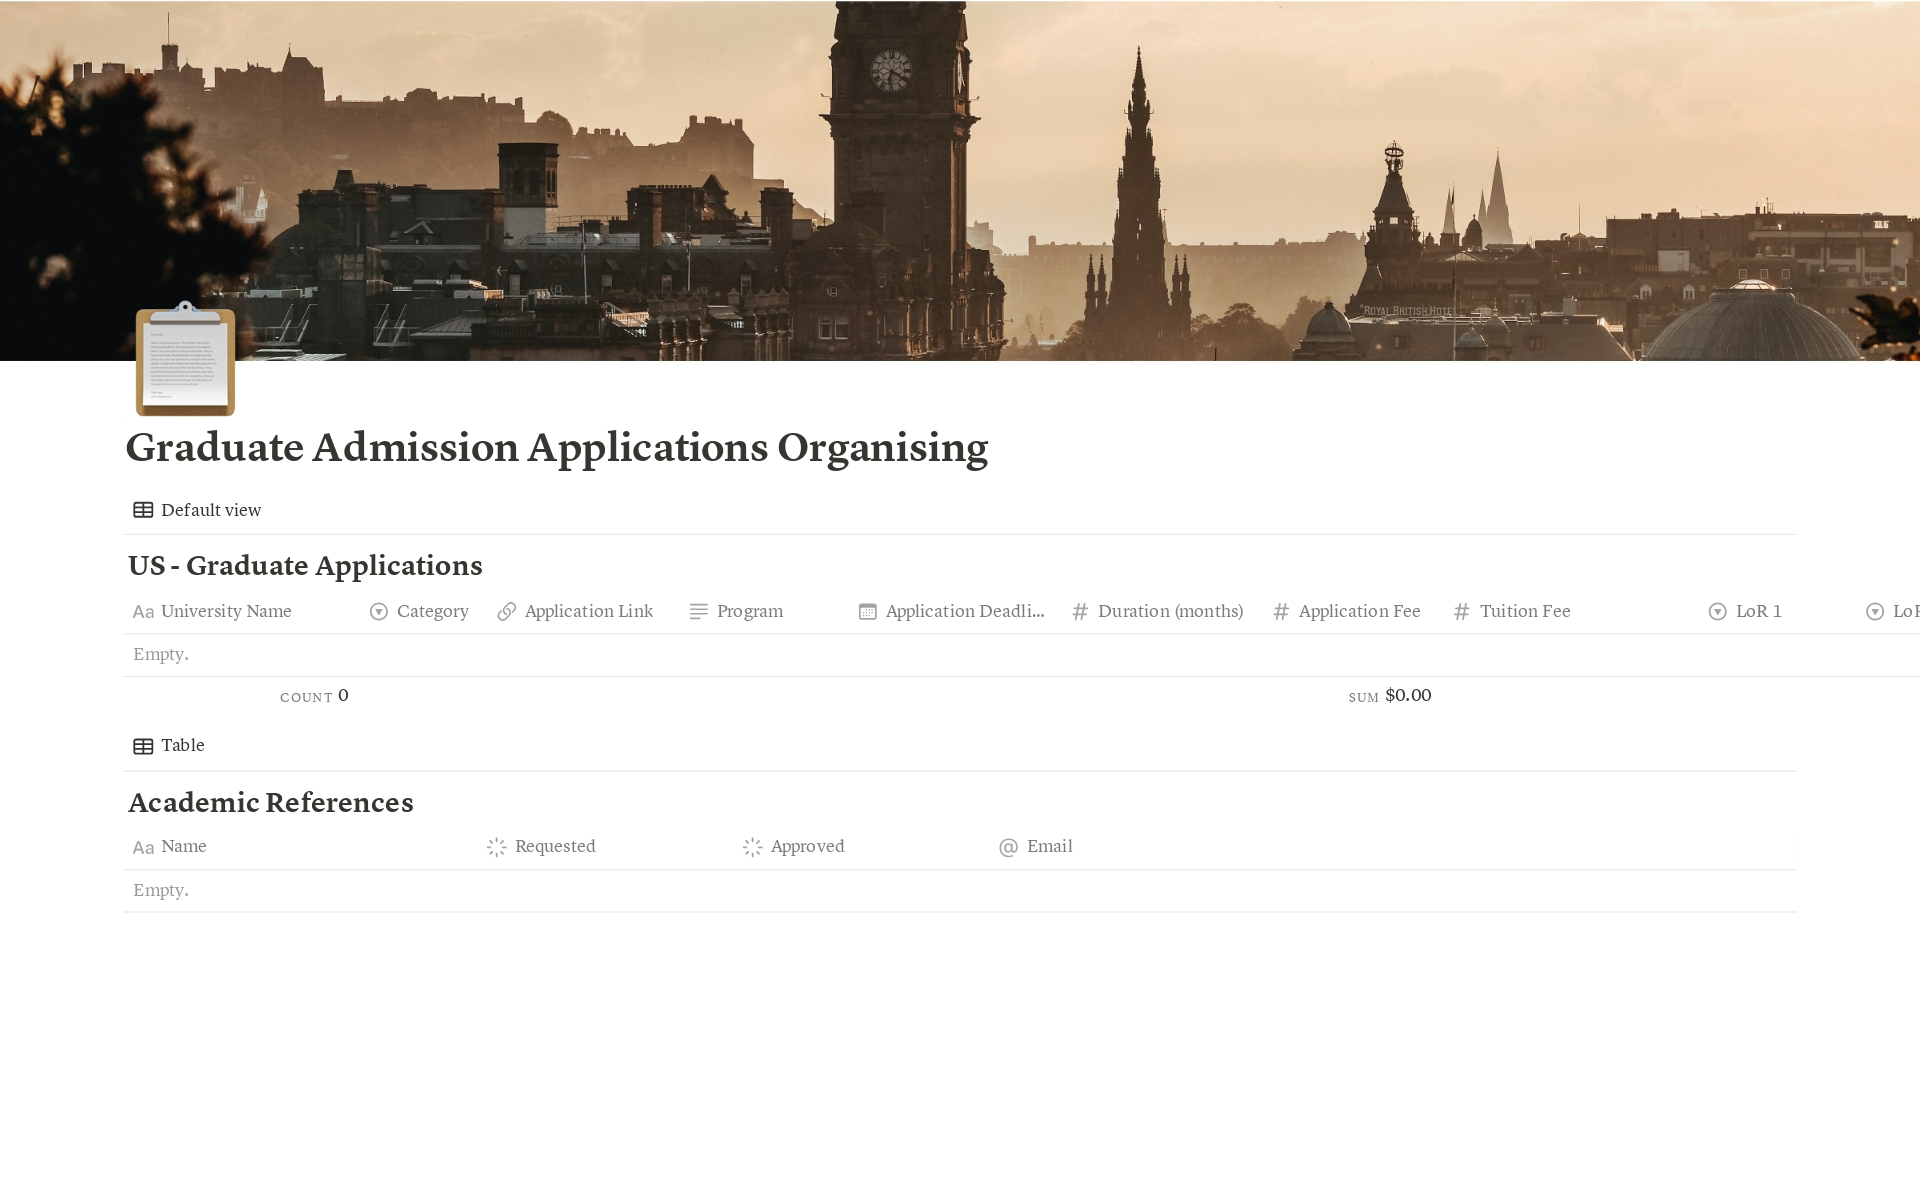 Vista previa de una plantilla para Graduate Admission Applications Organising